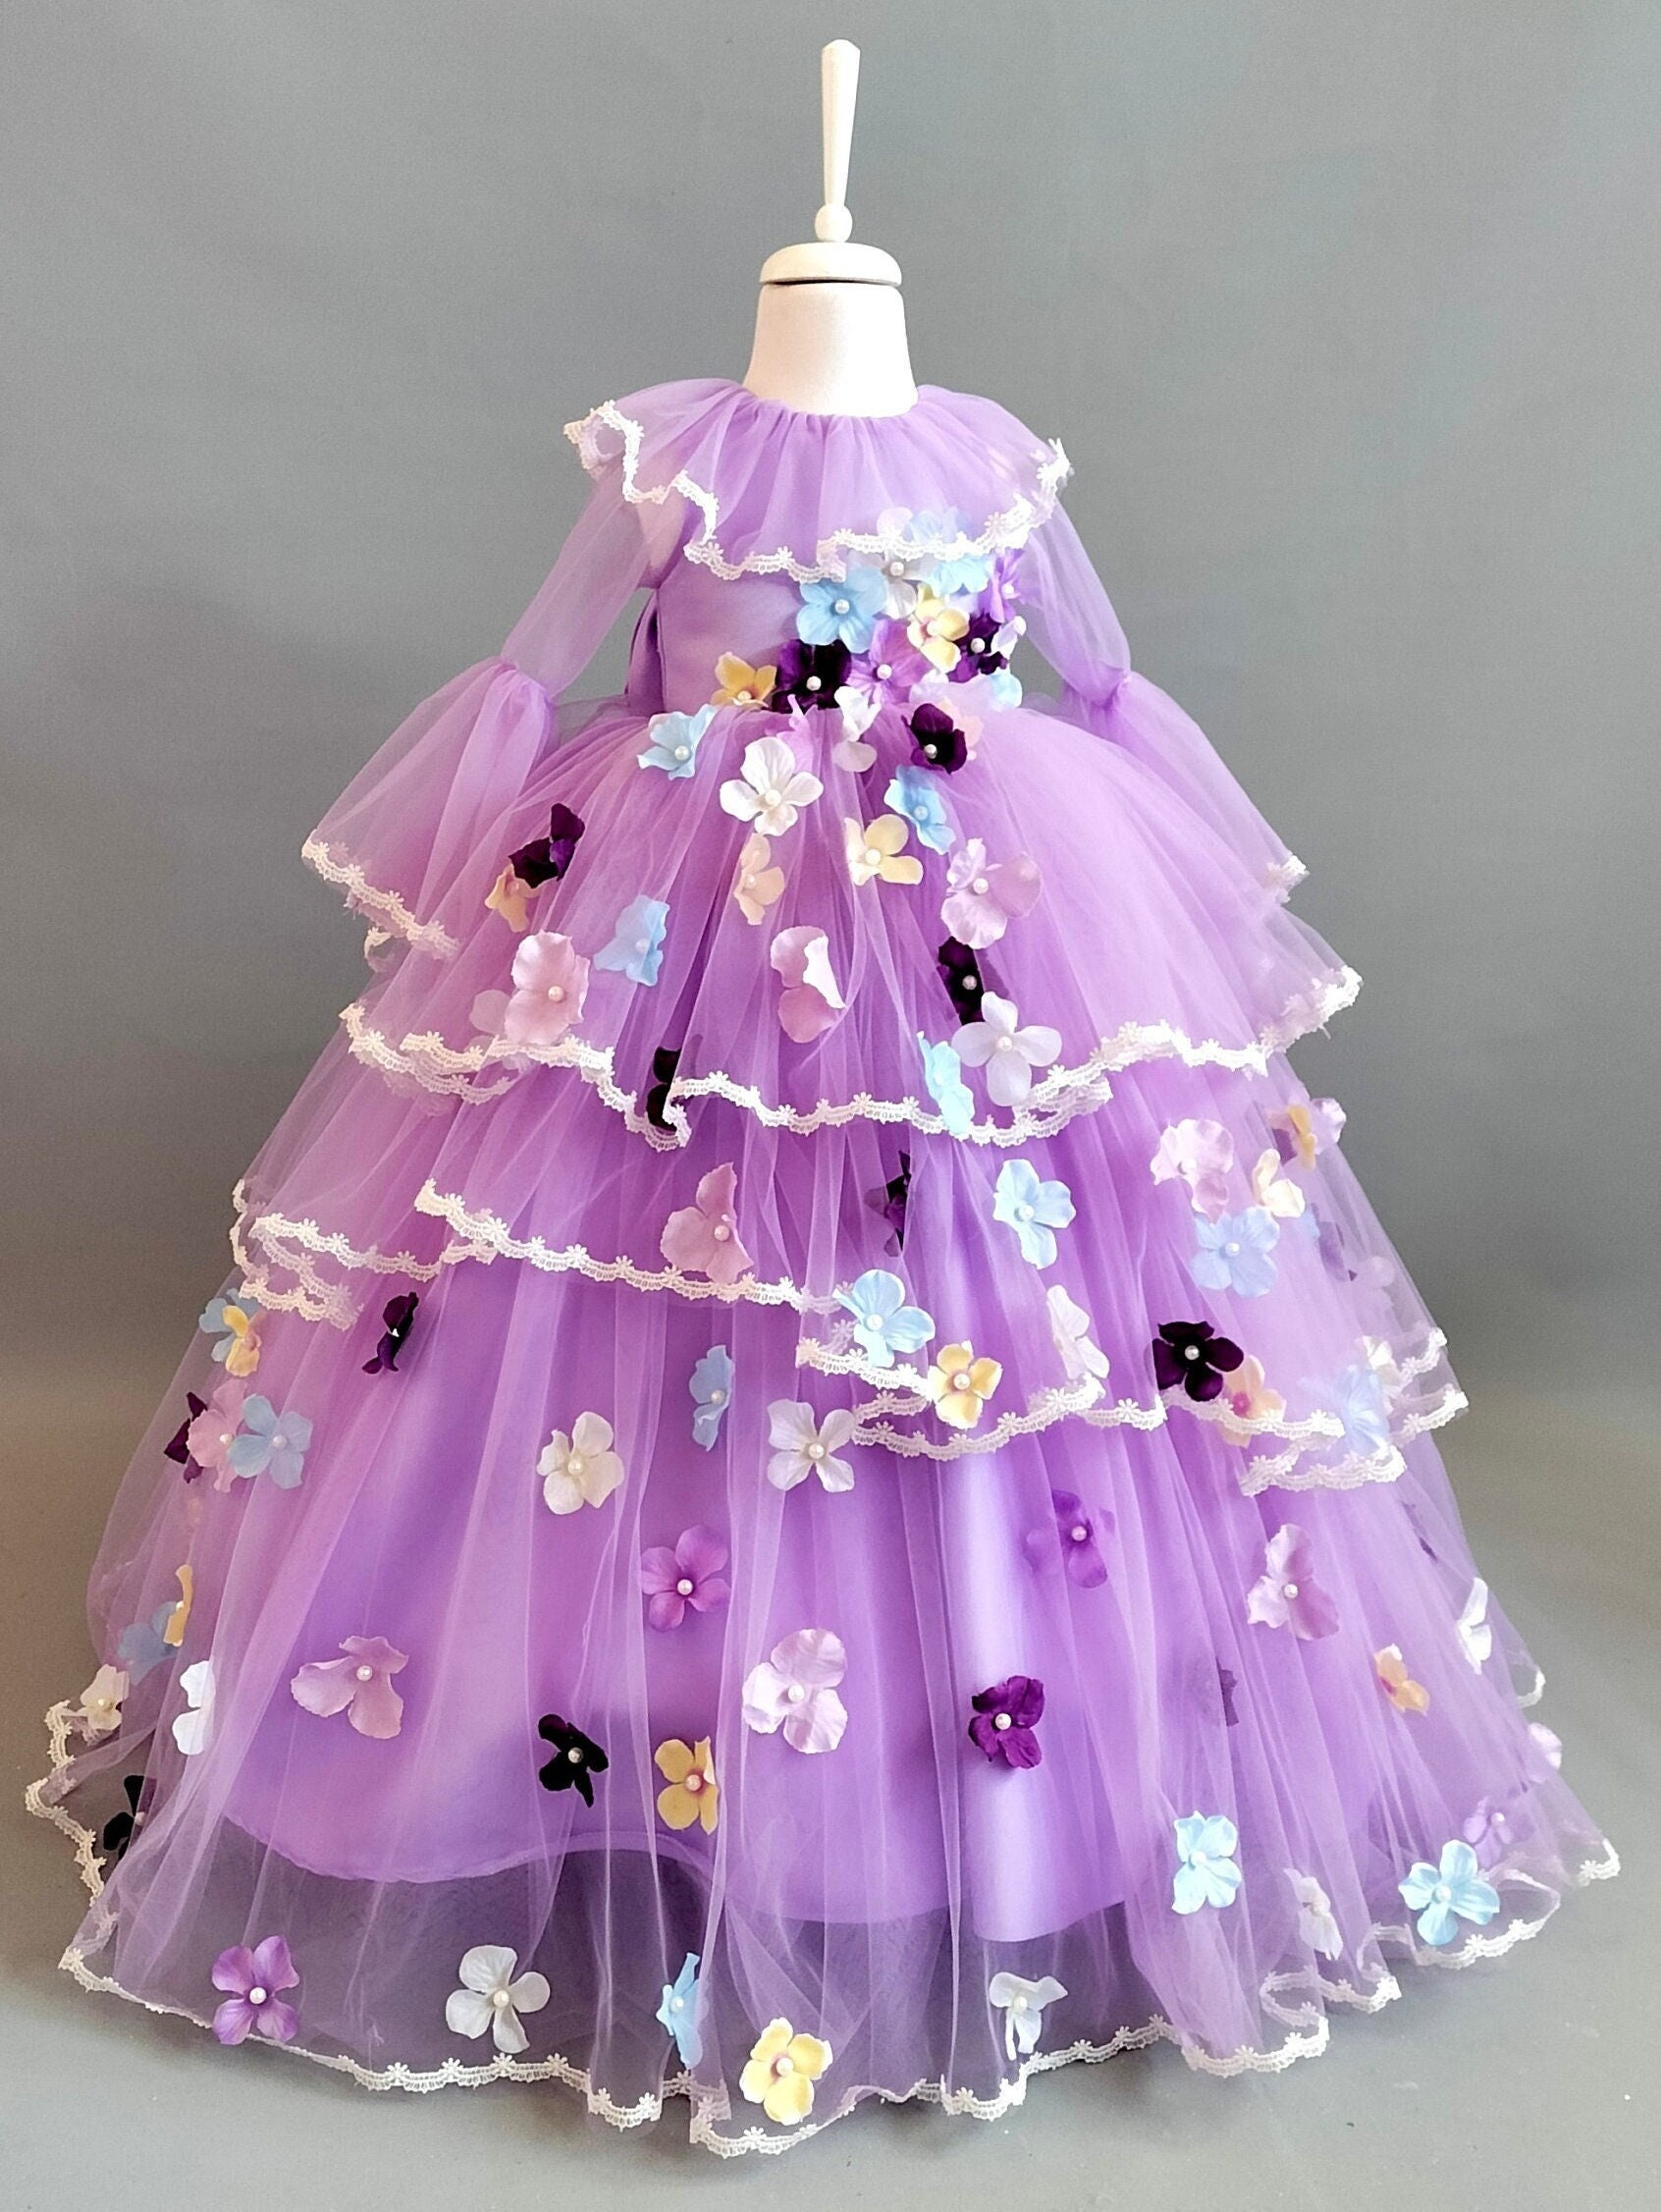 Encanto Isabela Dress for Girls. Deliver in 5 Business Days